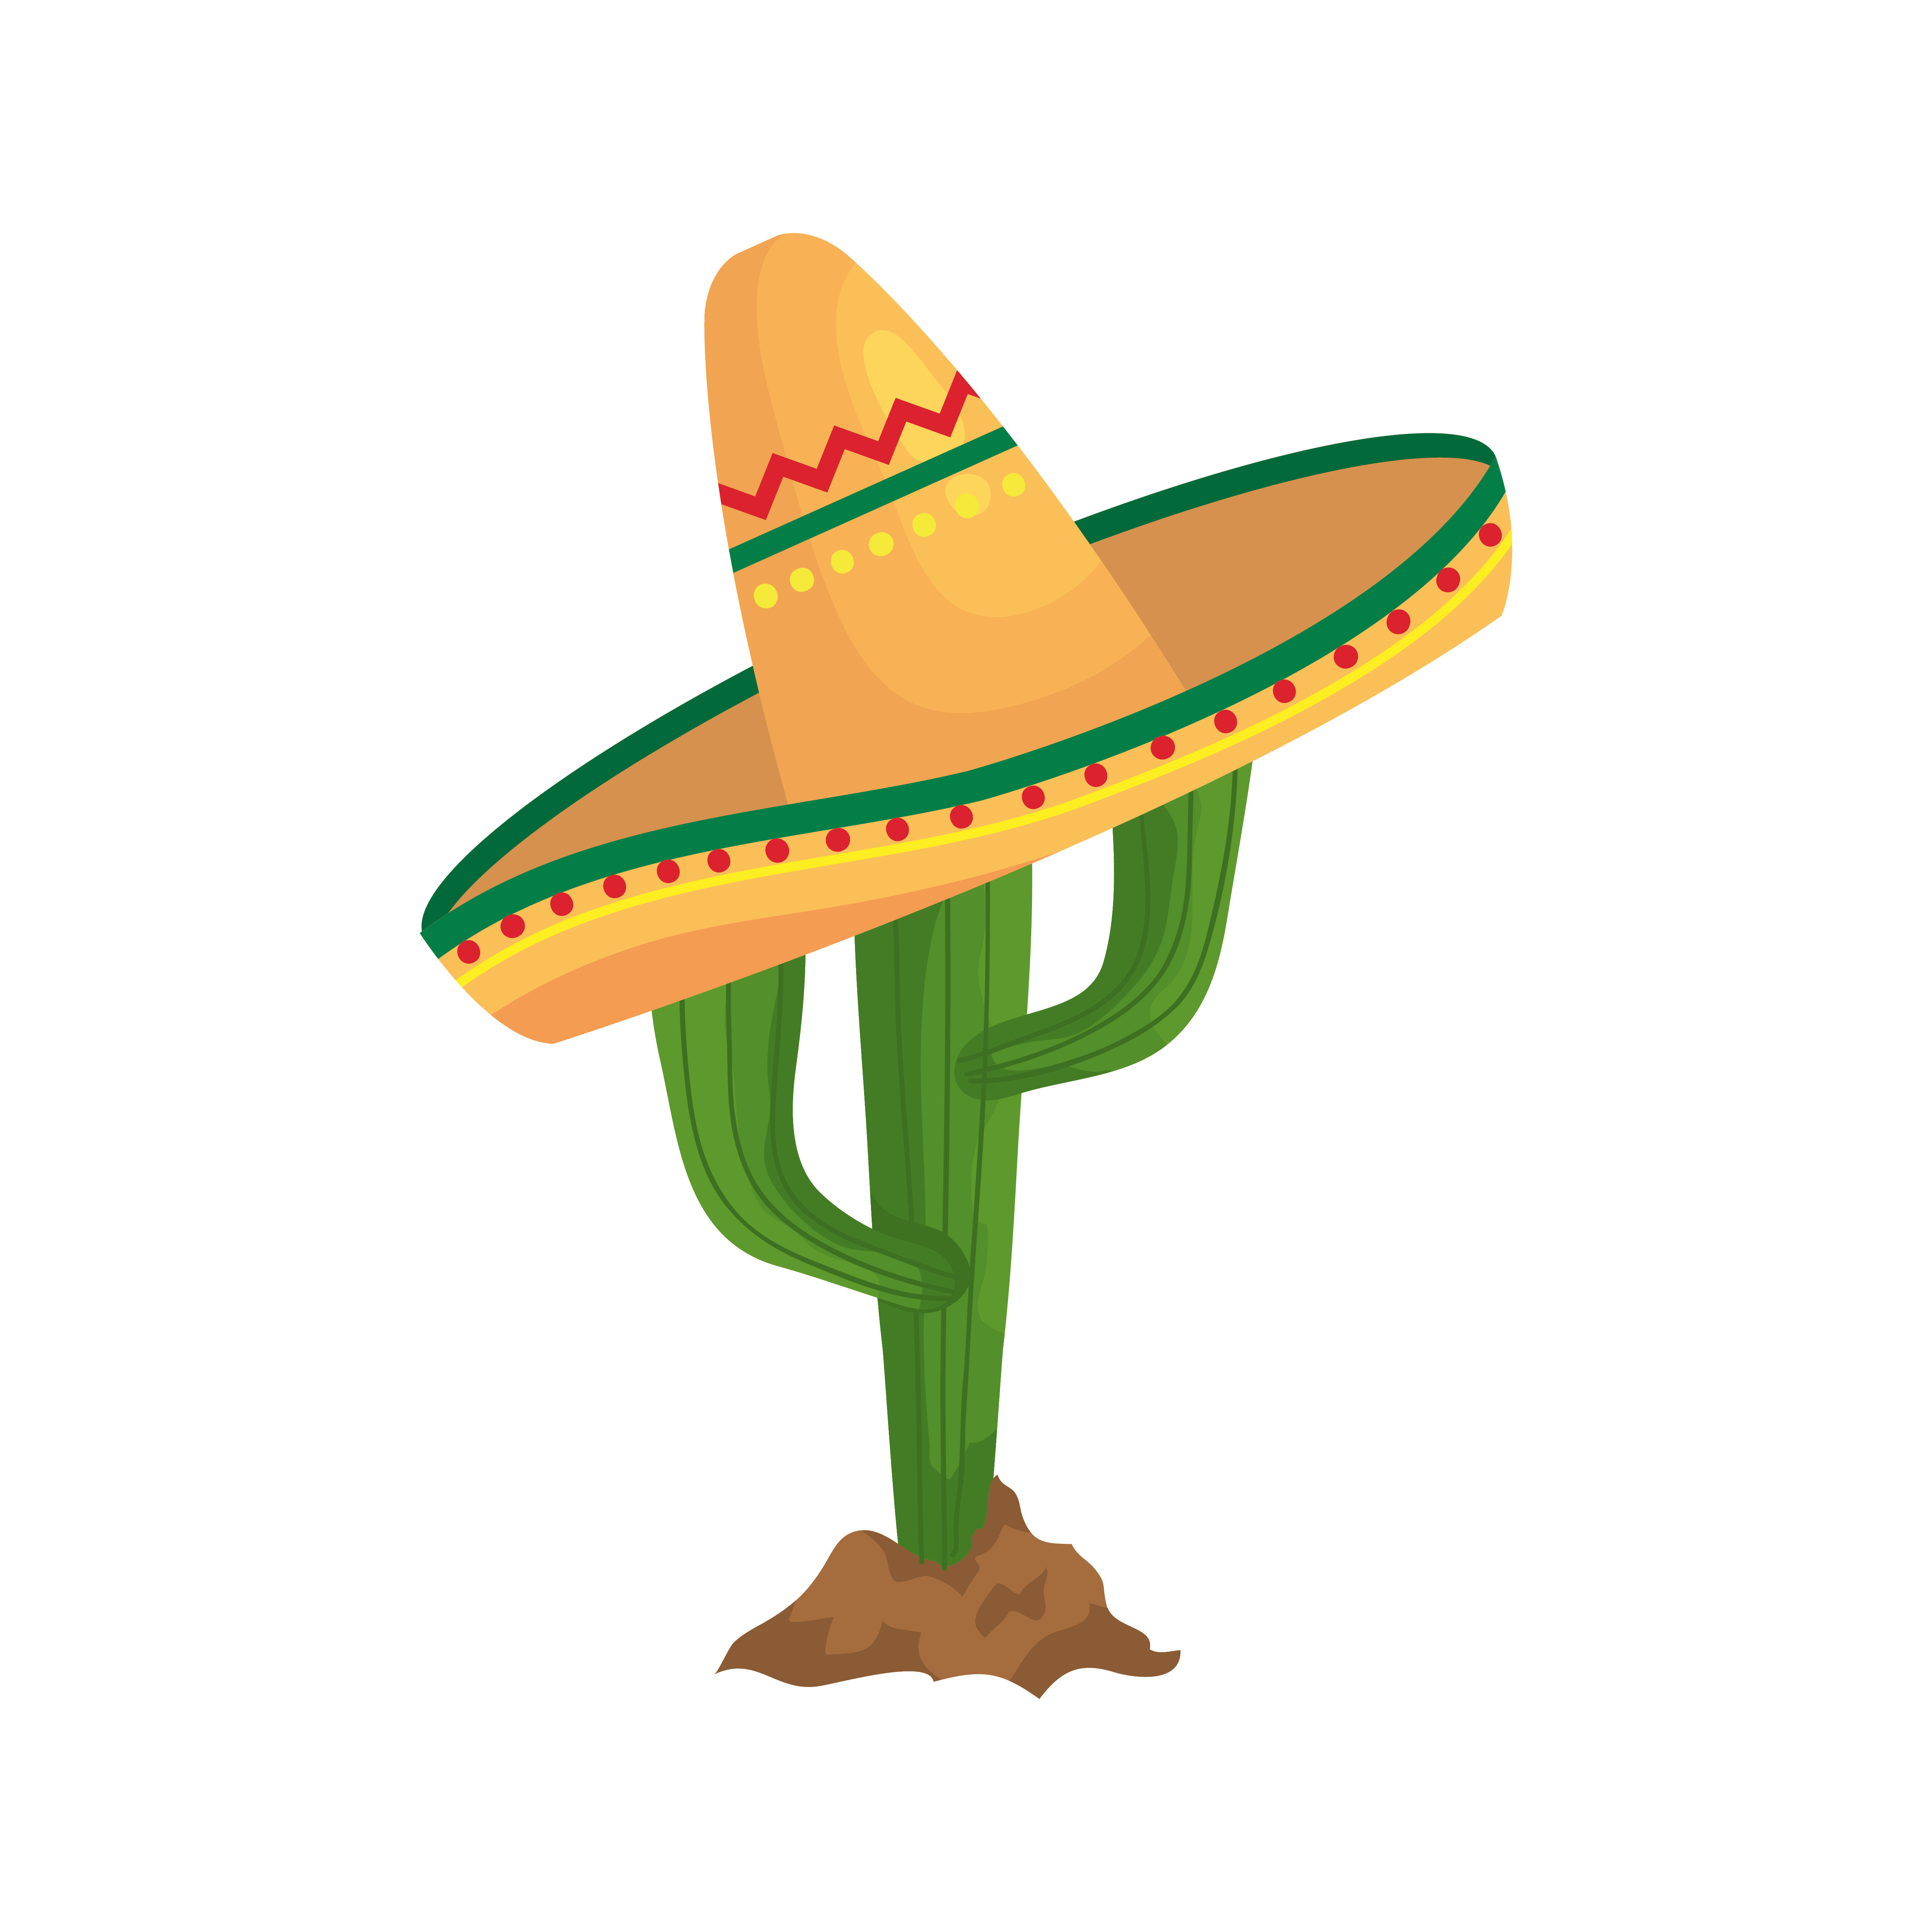 Définir Sombrero Mexicain, Cactus, Taco Avec Tortilla Et Icône Du Drapeau  Mexicain. Vecteur Clip Art Libres De Droits, Svg, Vecteurs Et Illustration.  Image 177673064